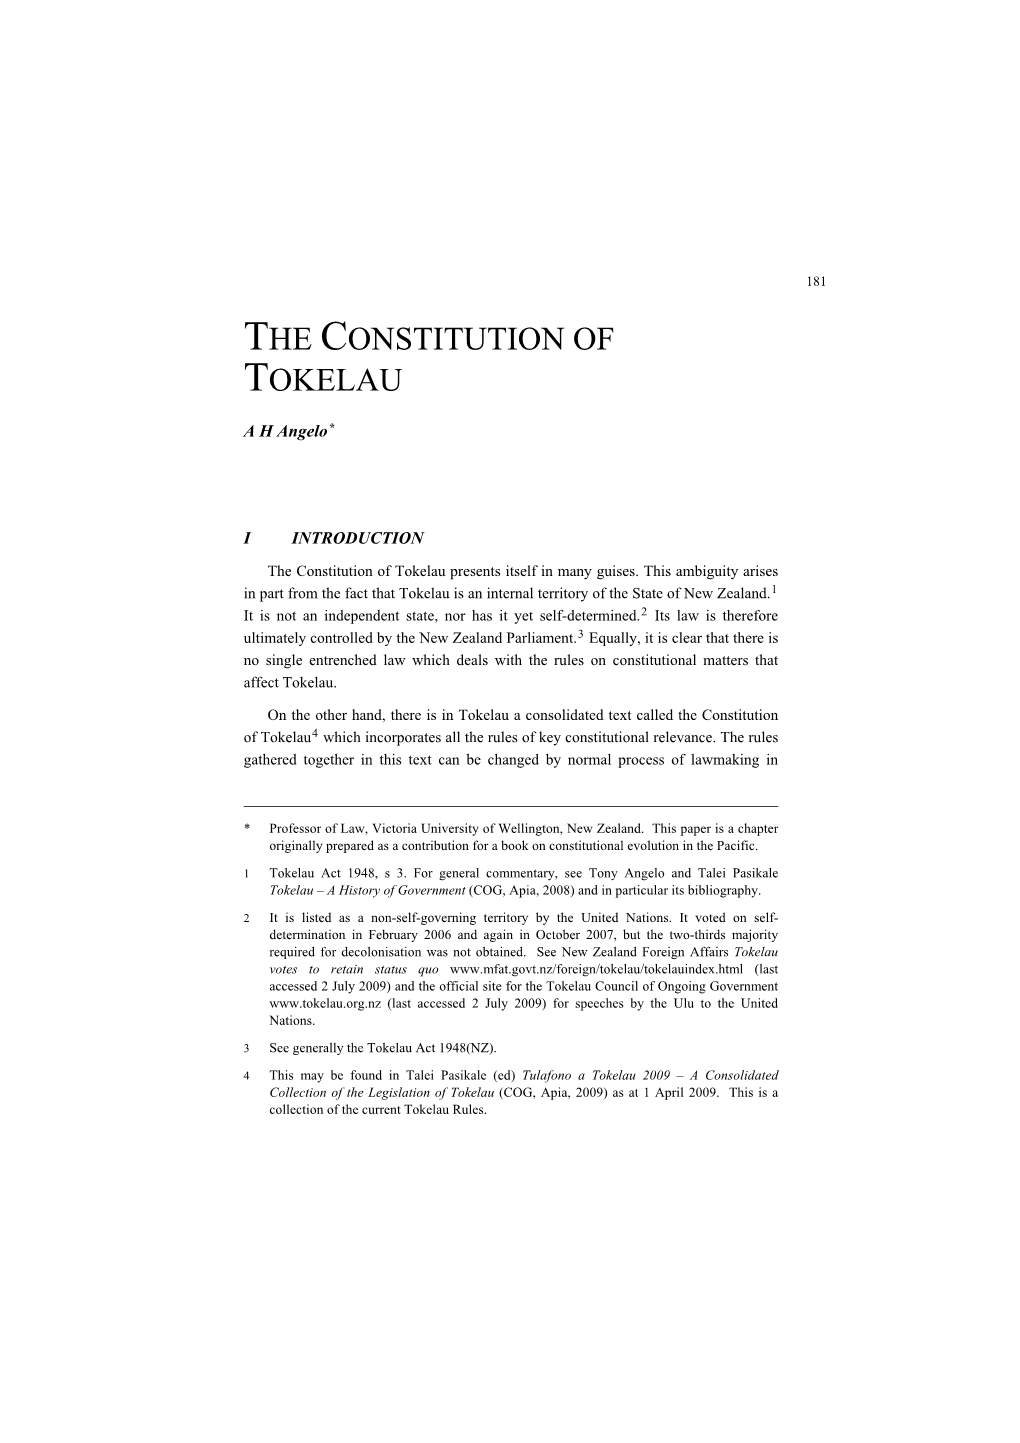 The Constitution of Tokelau